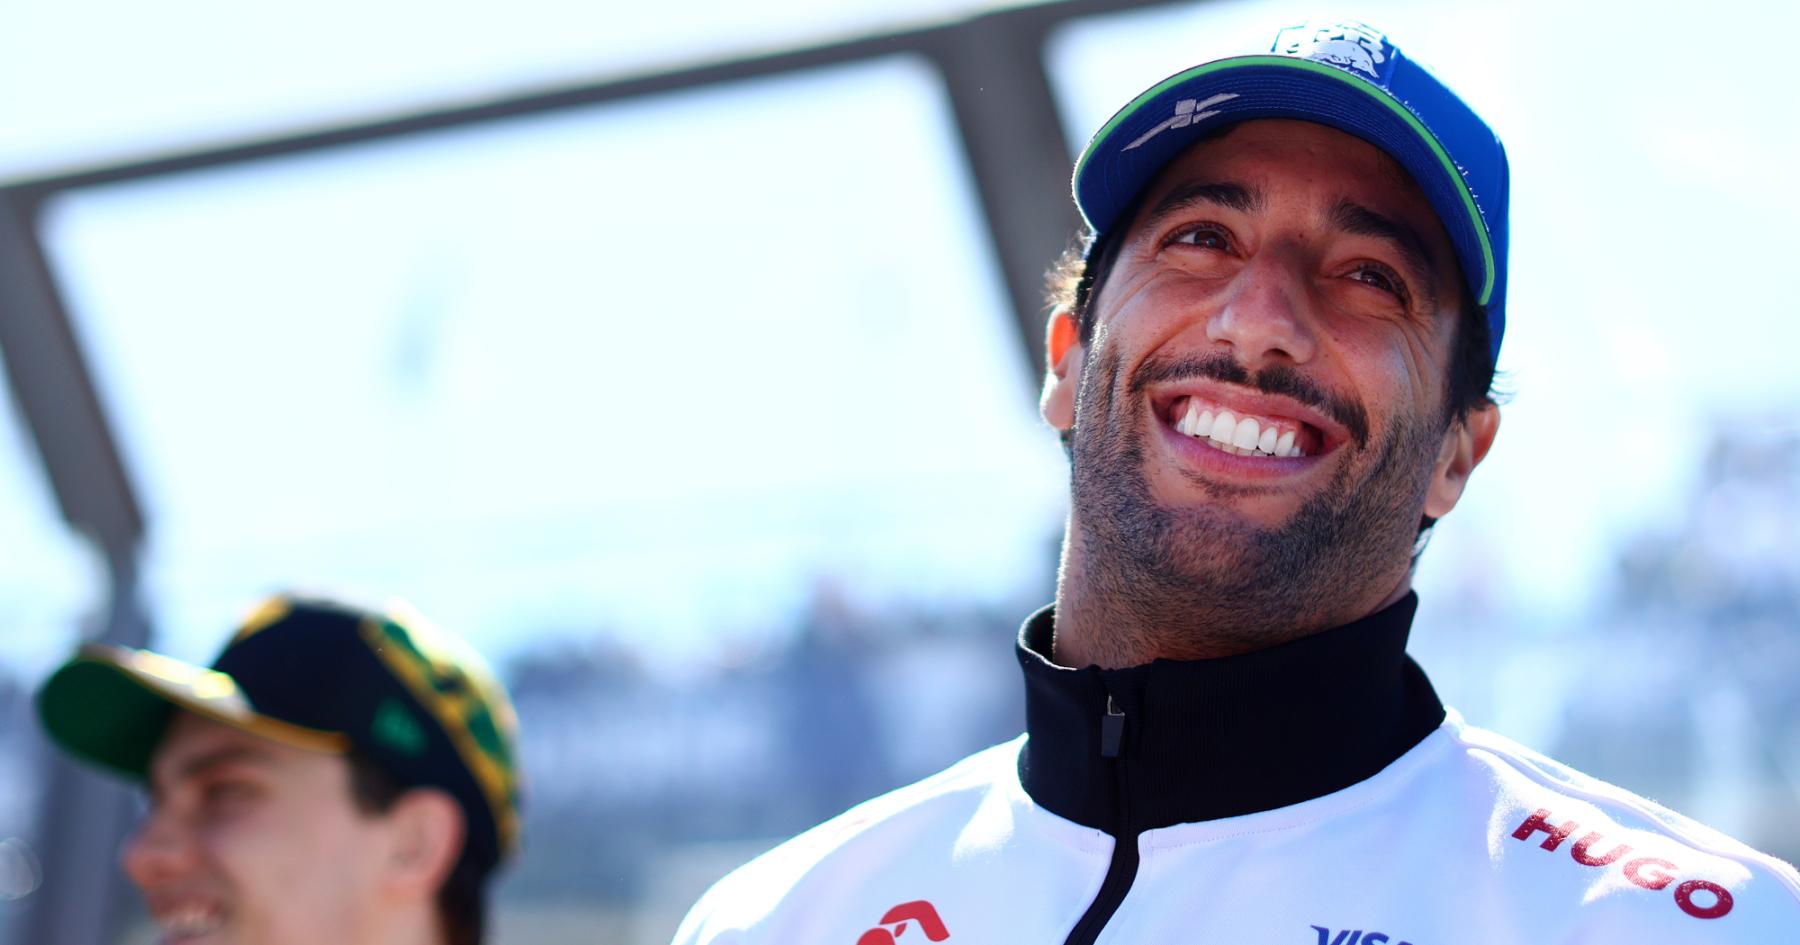 Critics’ claims of nonsense in Ricciardo’s head unfounded